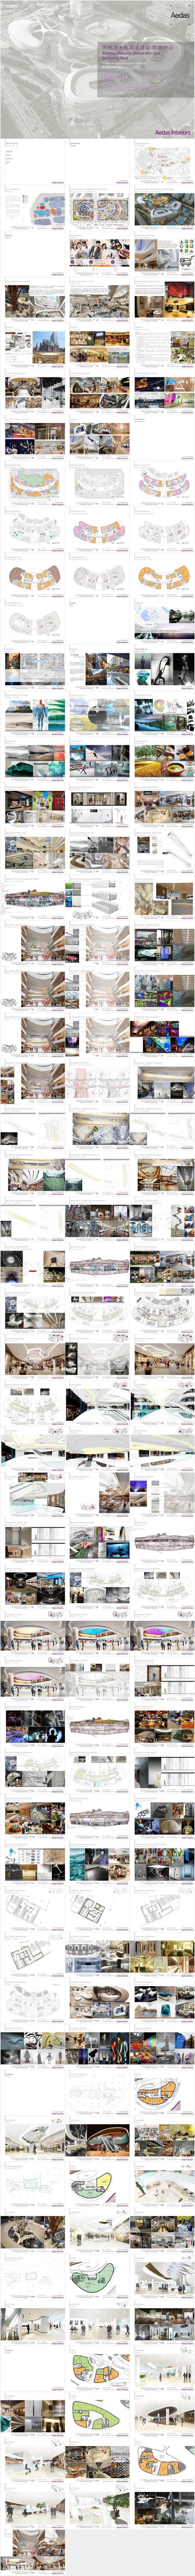 【Aedas】苏州水秀天地商业项目·购物中心